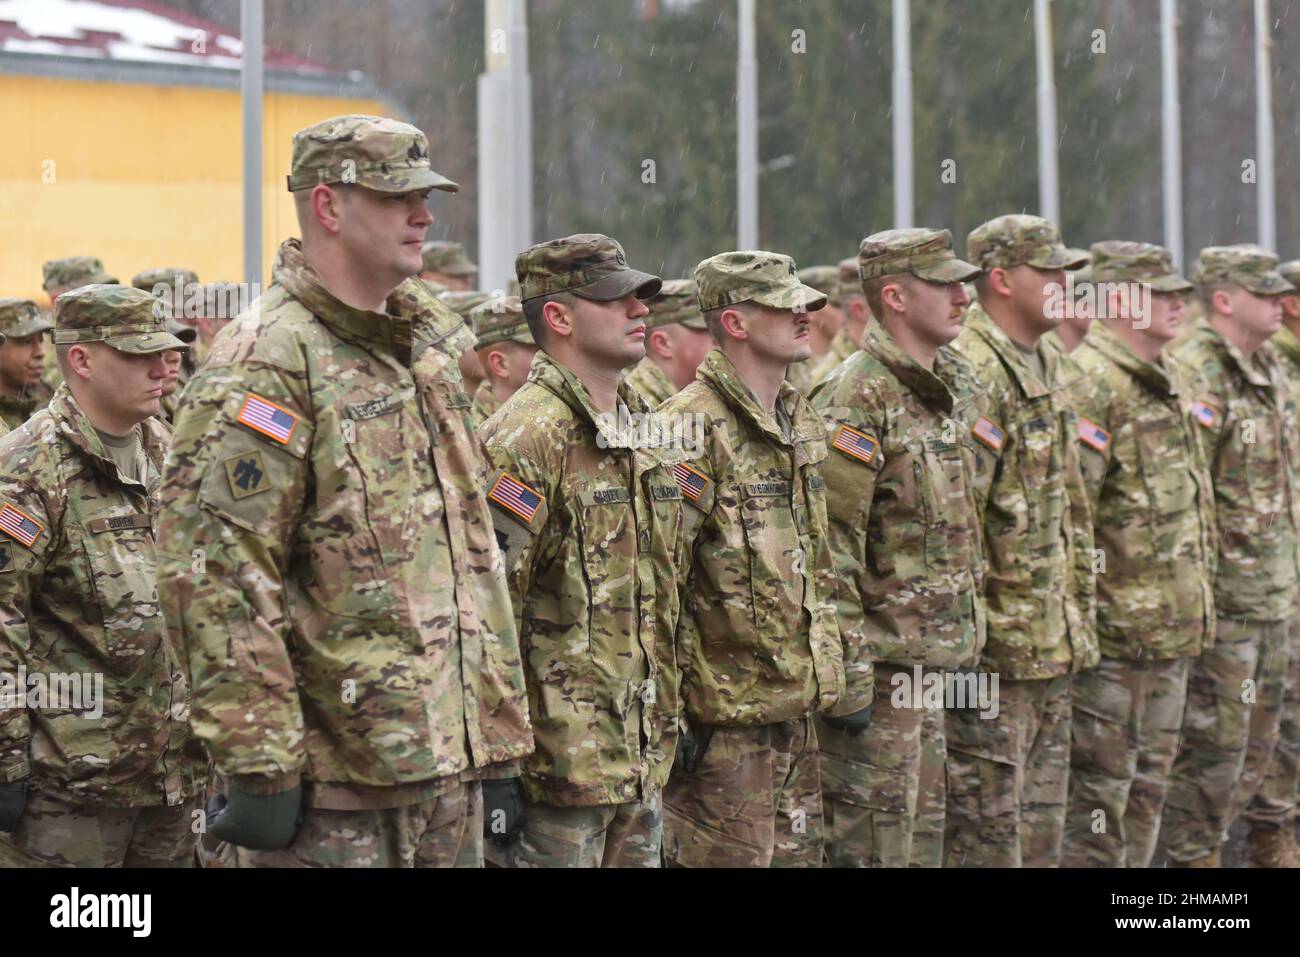 Starychi, Ukraine 2. februar 2017. USA Instruktoren gesehen während der Eröffnungszeremonie der nächsten Stufe der Ausbildung der Streitkräfte Einheiten im Rahmen des Programms "Joint Multinale Training Group - Ukraine" (JMTG-U). Stockfoto